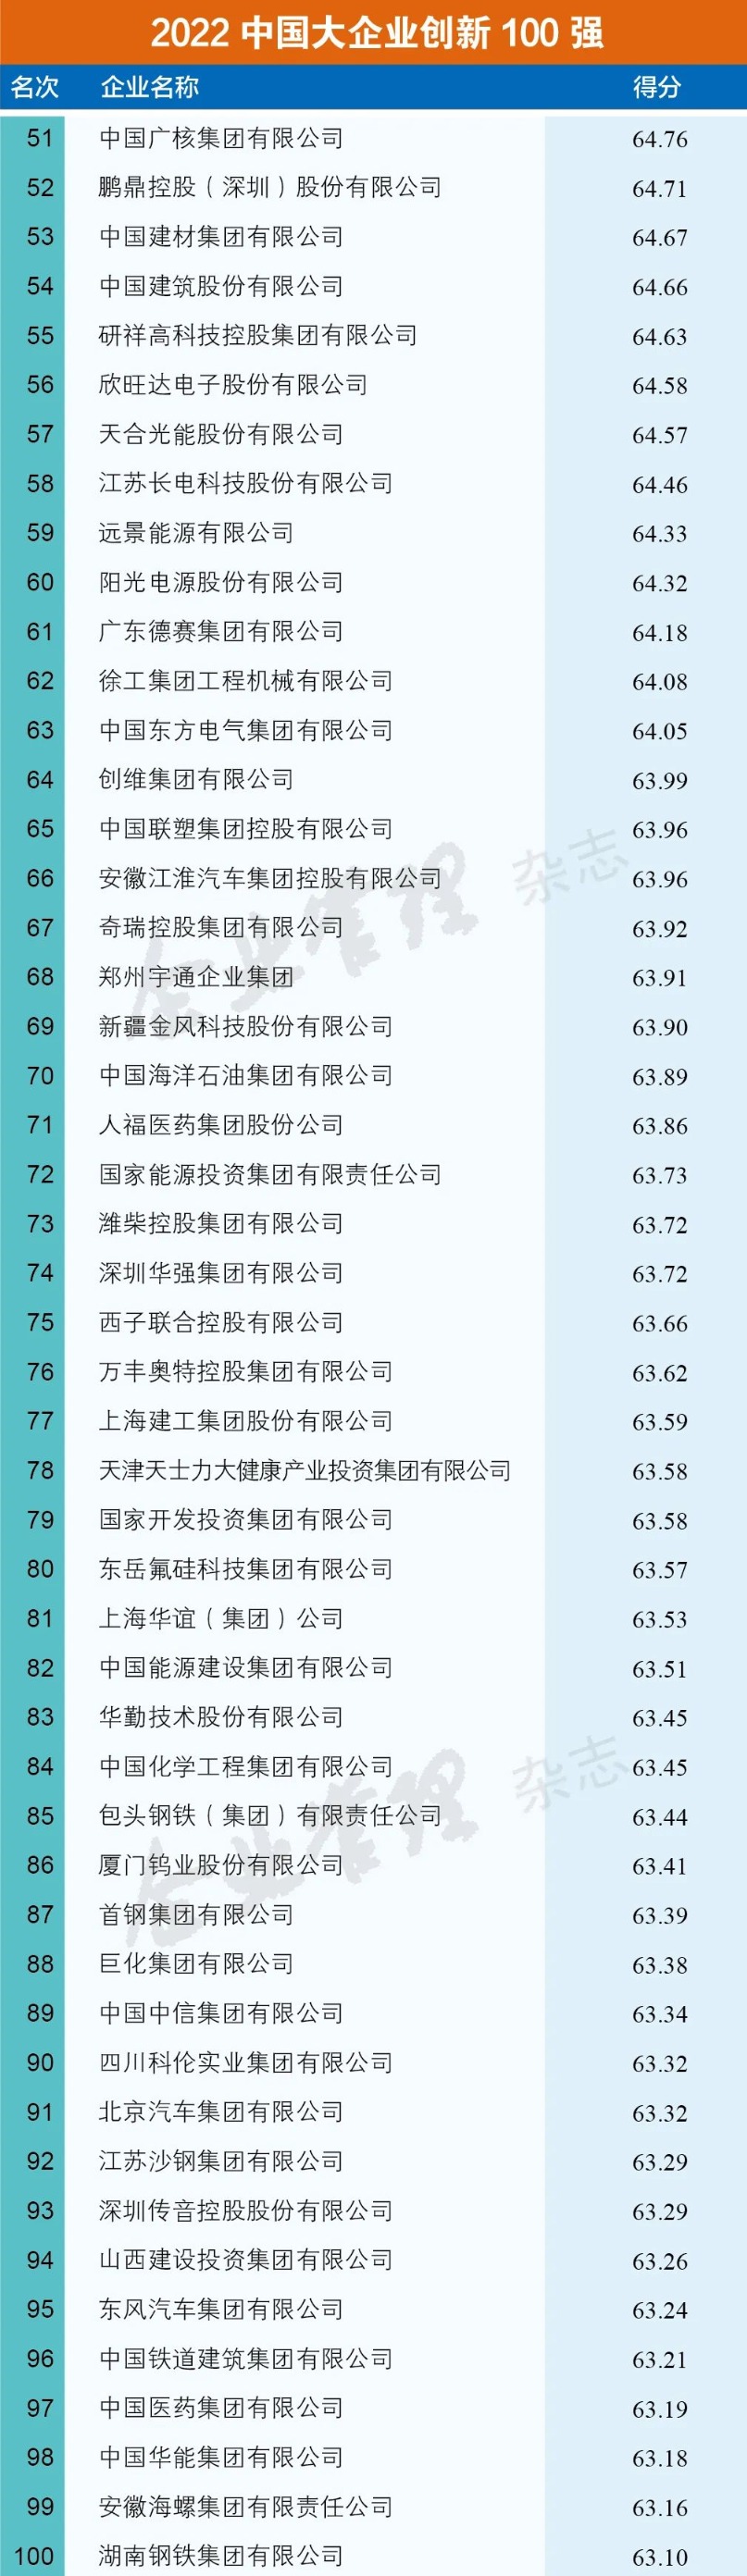 2022中国大企业创新100强名单